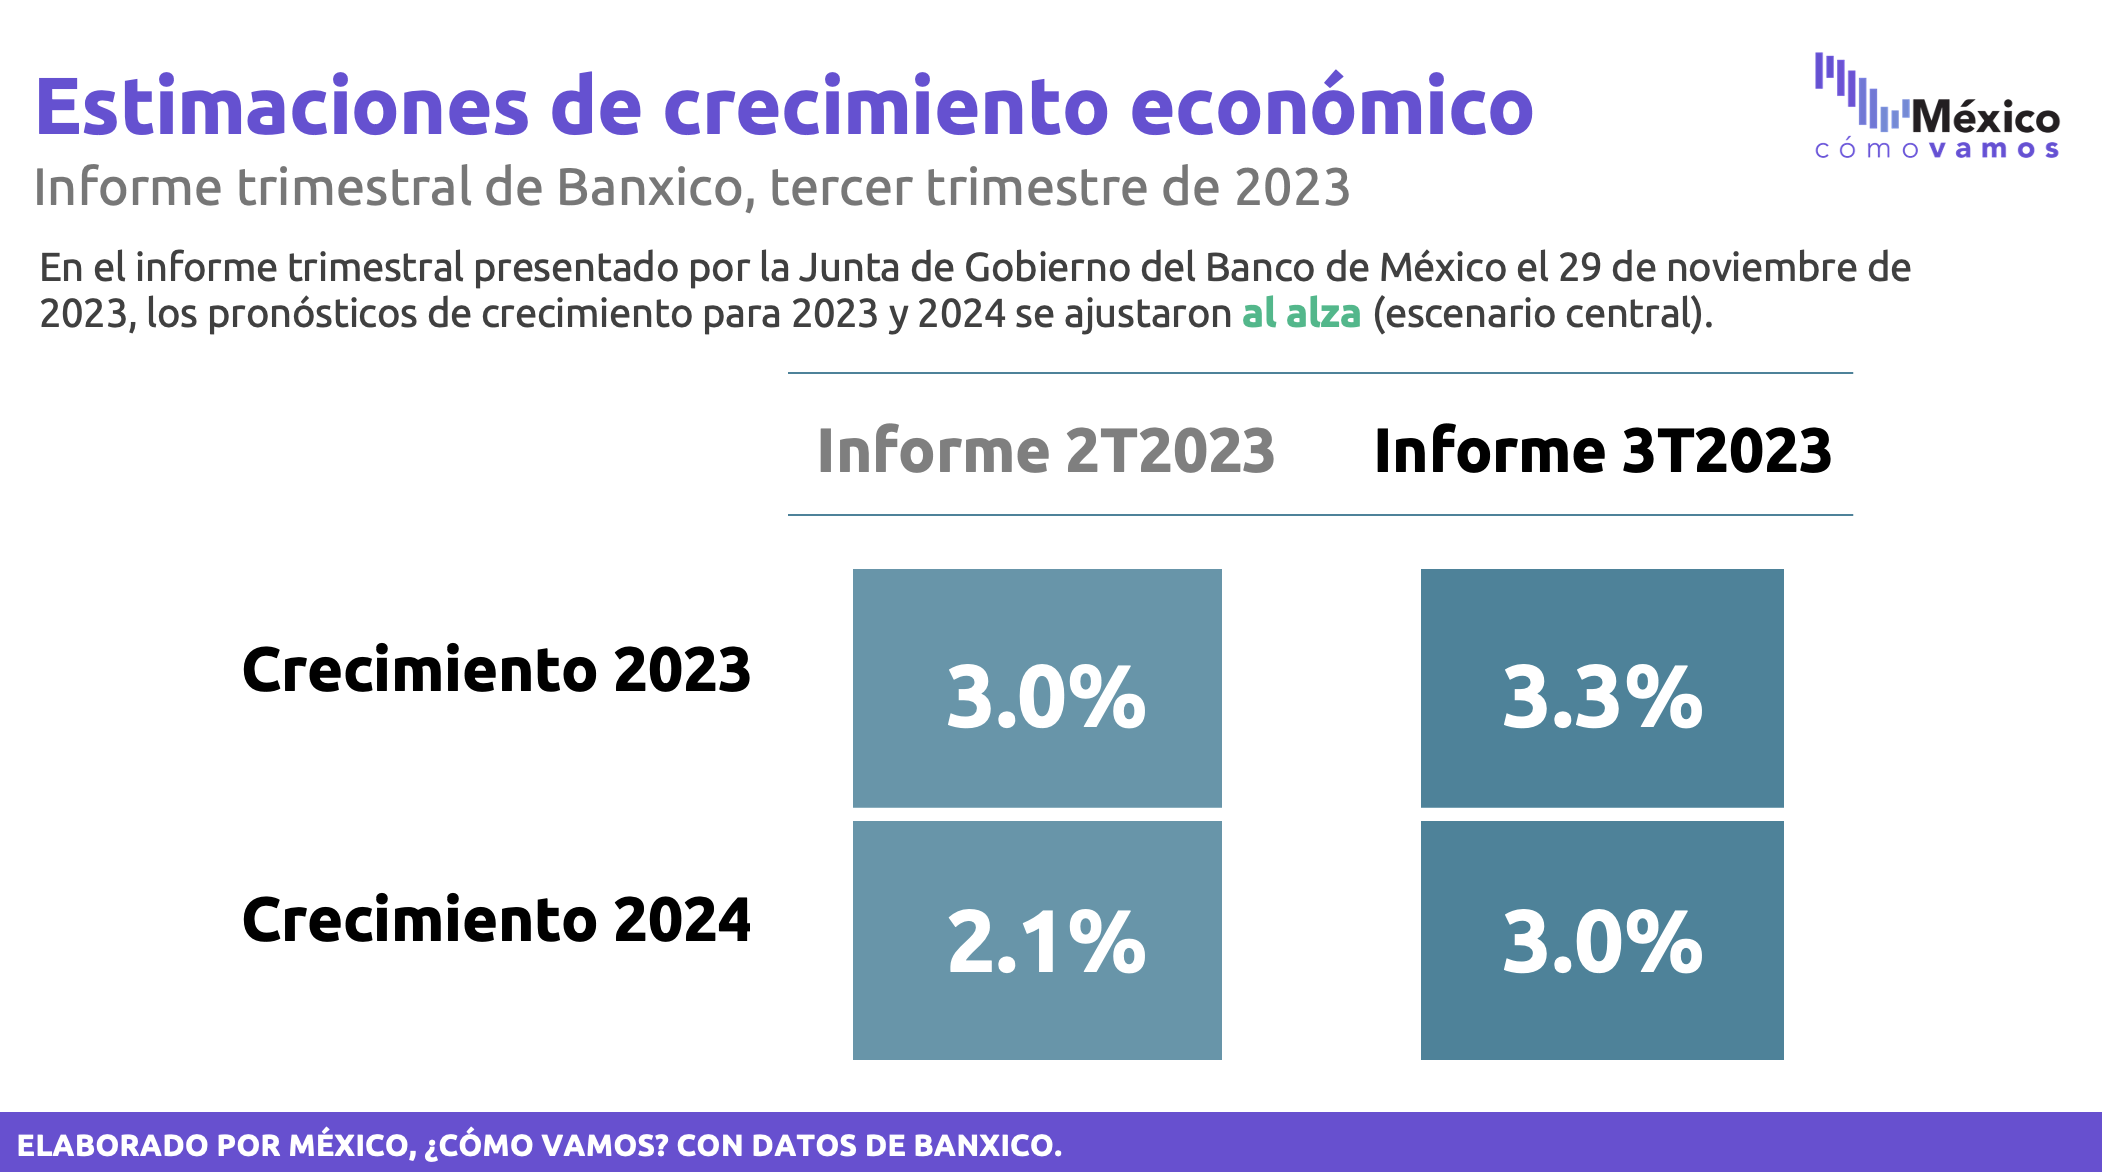 Estimaciones de crecimiento – Informe trimestral Banxico 3T2023